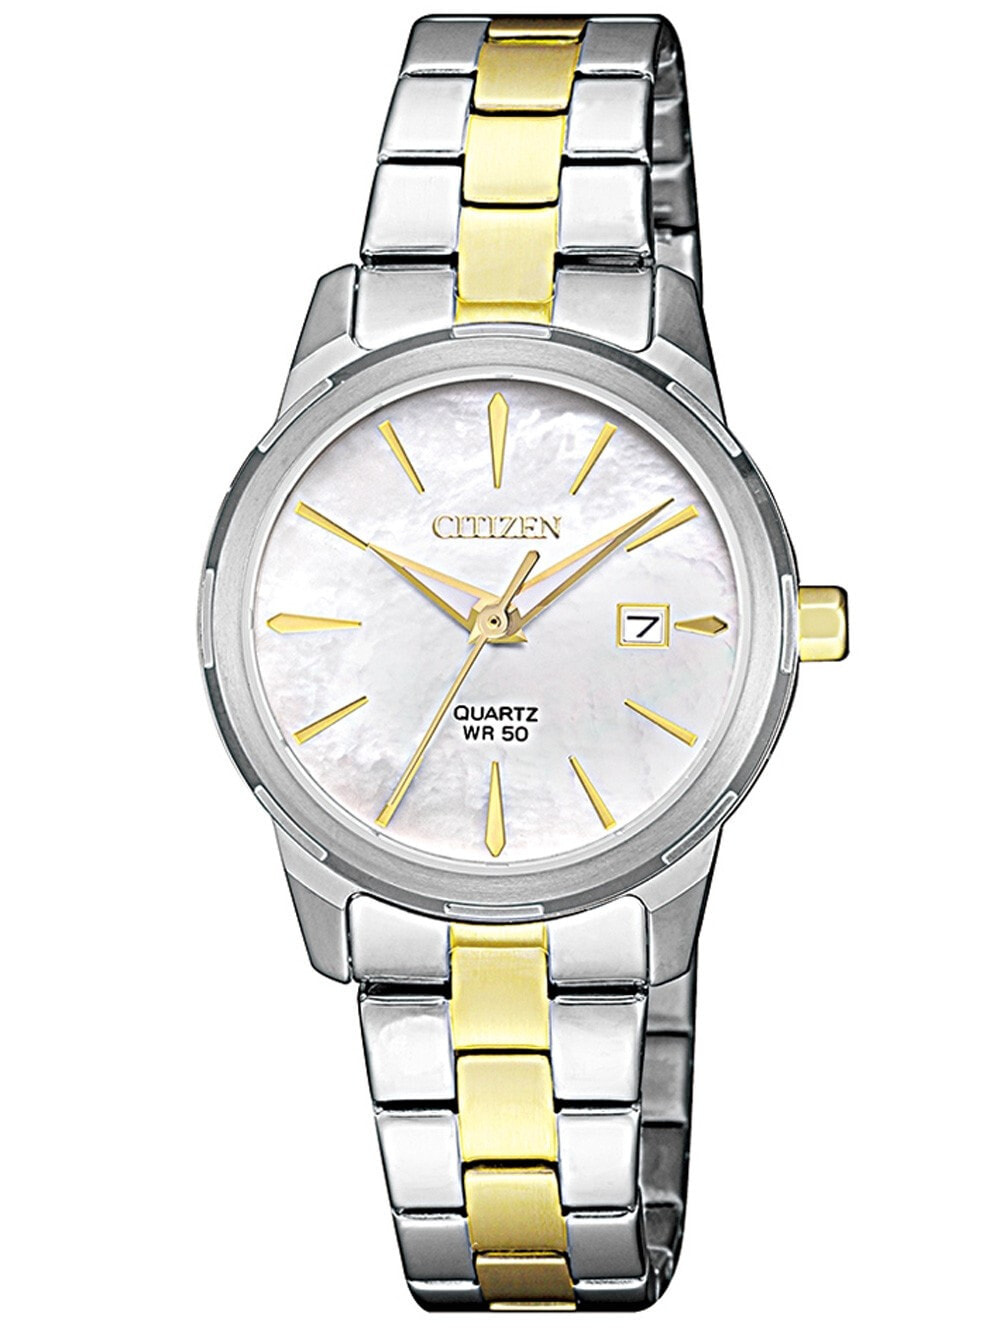 Женские наручные кварцевые часы Citizen циферблат перламутровый белый.  Браслет стальной с частичным IP покрытием.